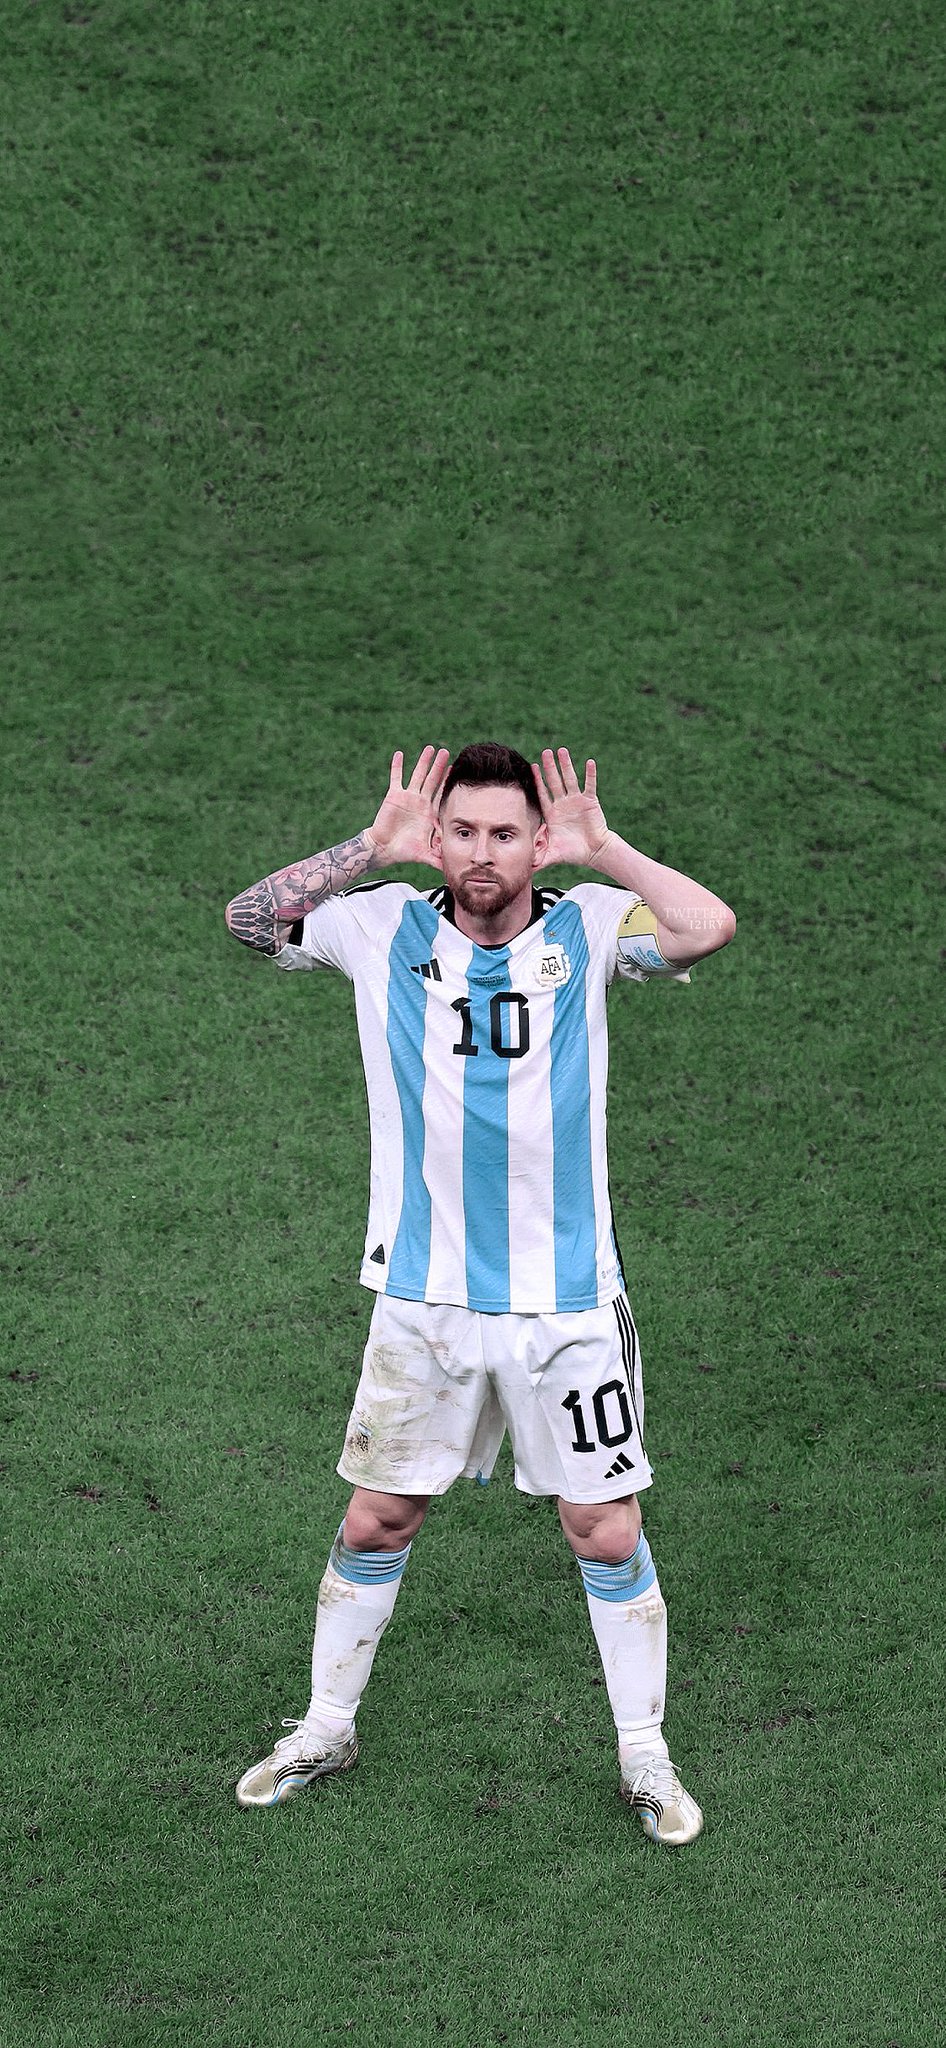 Nếu bạn là một fan hâm mộ bóng đá, bạn không thể bỏ qua hình ảnh về Messi - một ngôi sao bóng đá lừng danh thế giới. Xem hình ảnh này, bạn sẽ cảm nhận được tài năng và sự quyết tâm của anh ta trên sân cỏ.